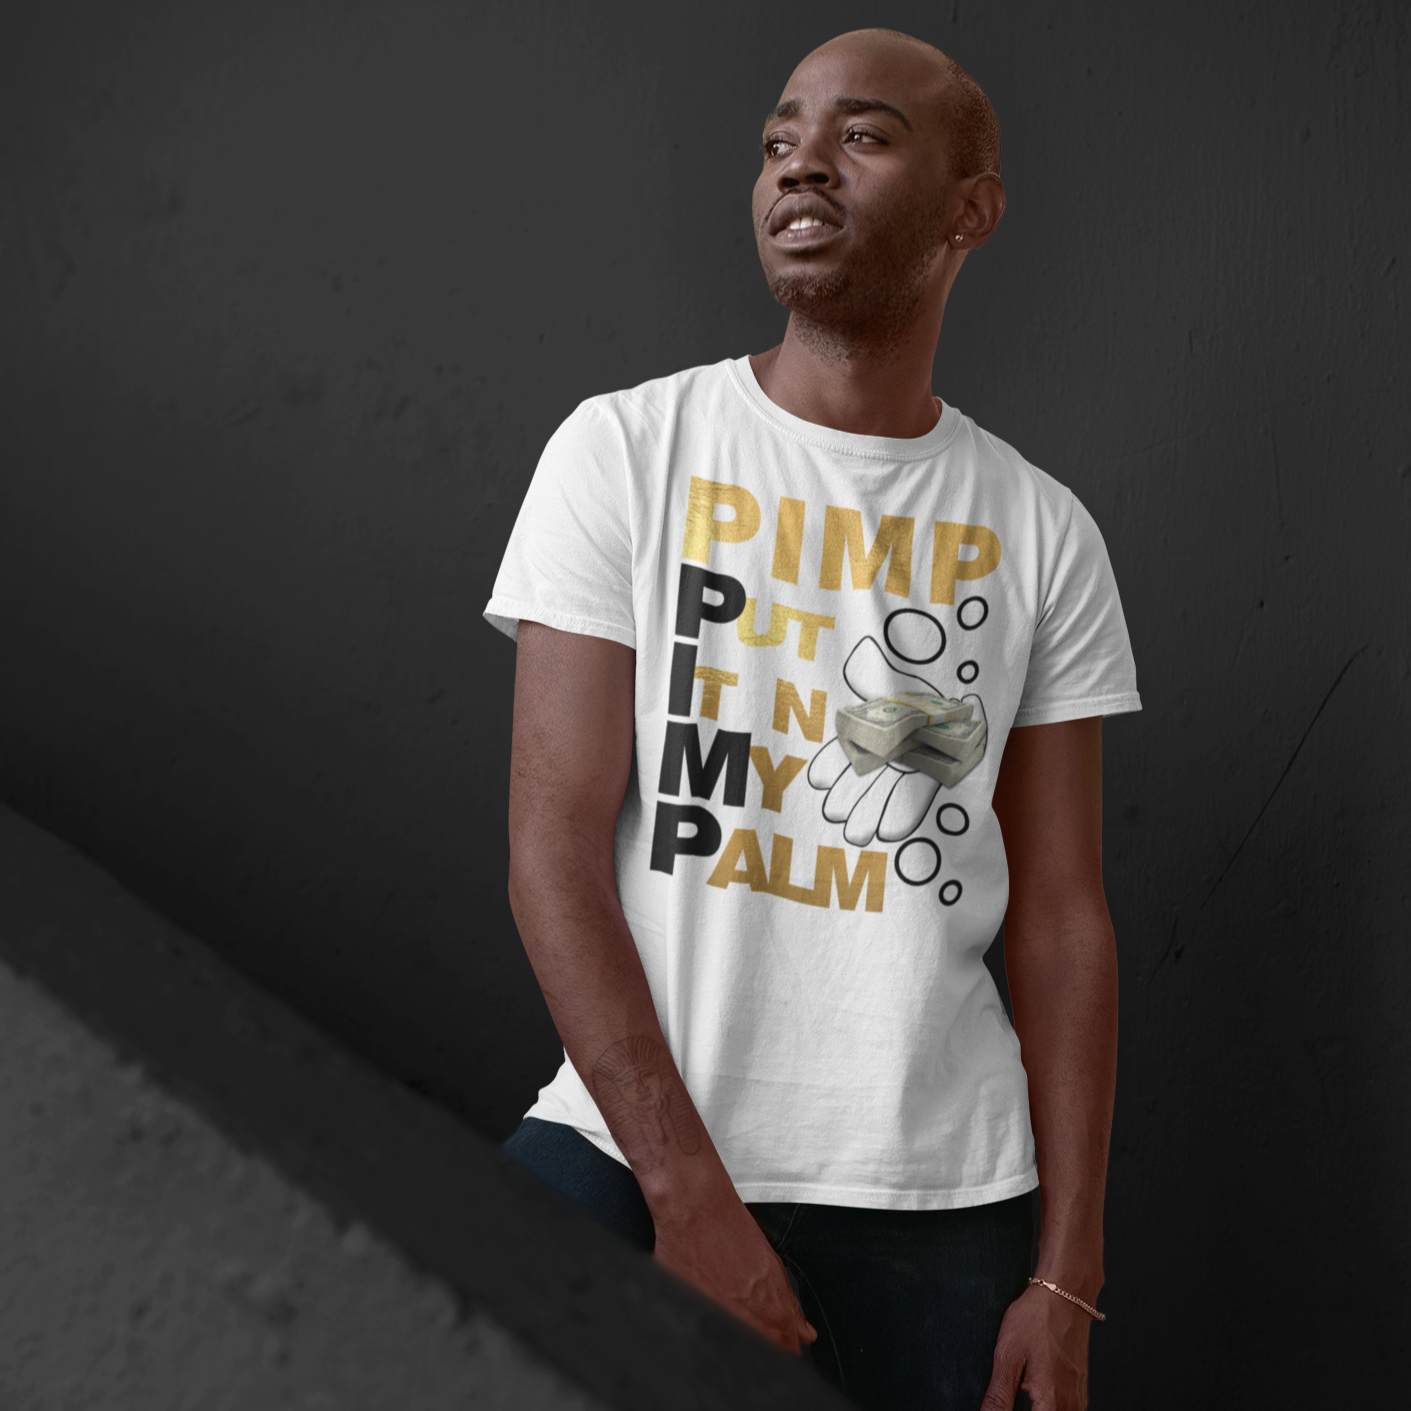 P.I.M.P PUT IT n MY PALM T-Shirt - Wilson Design Group